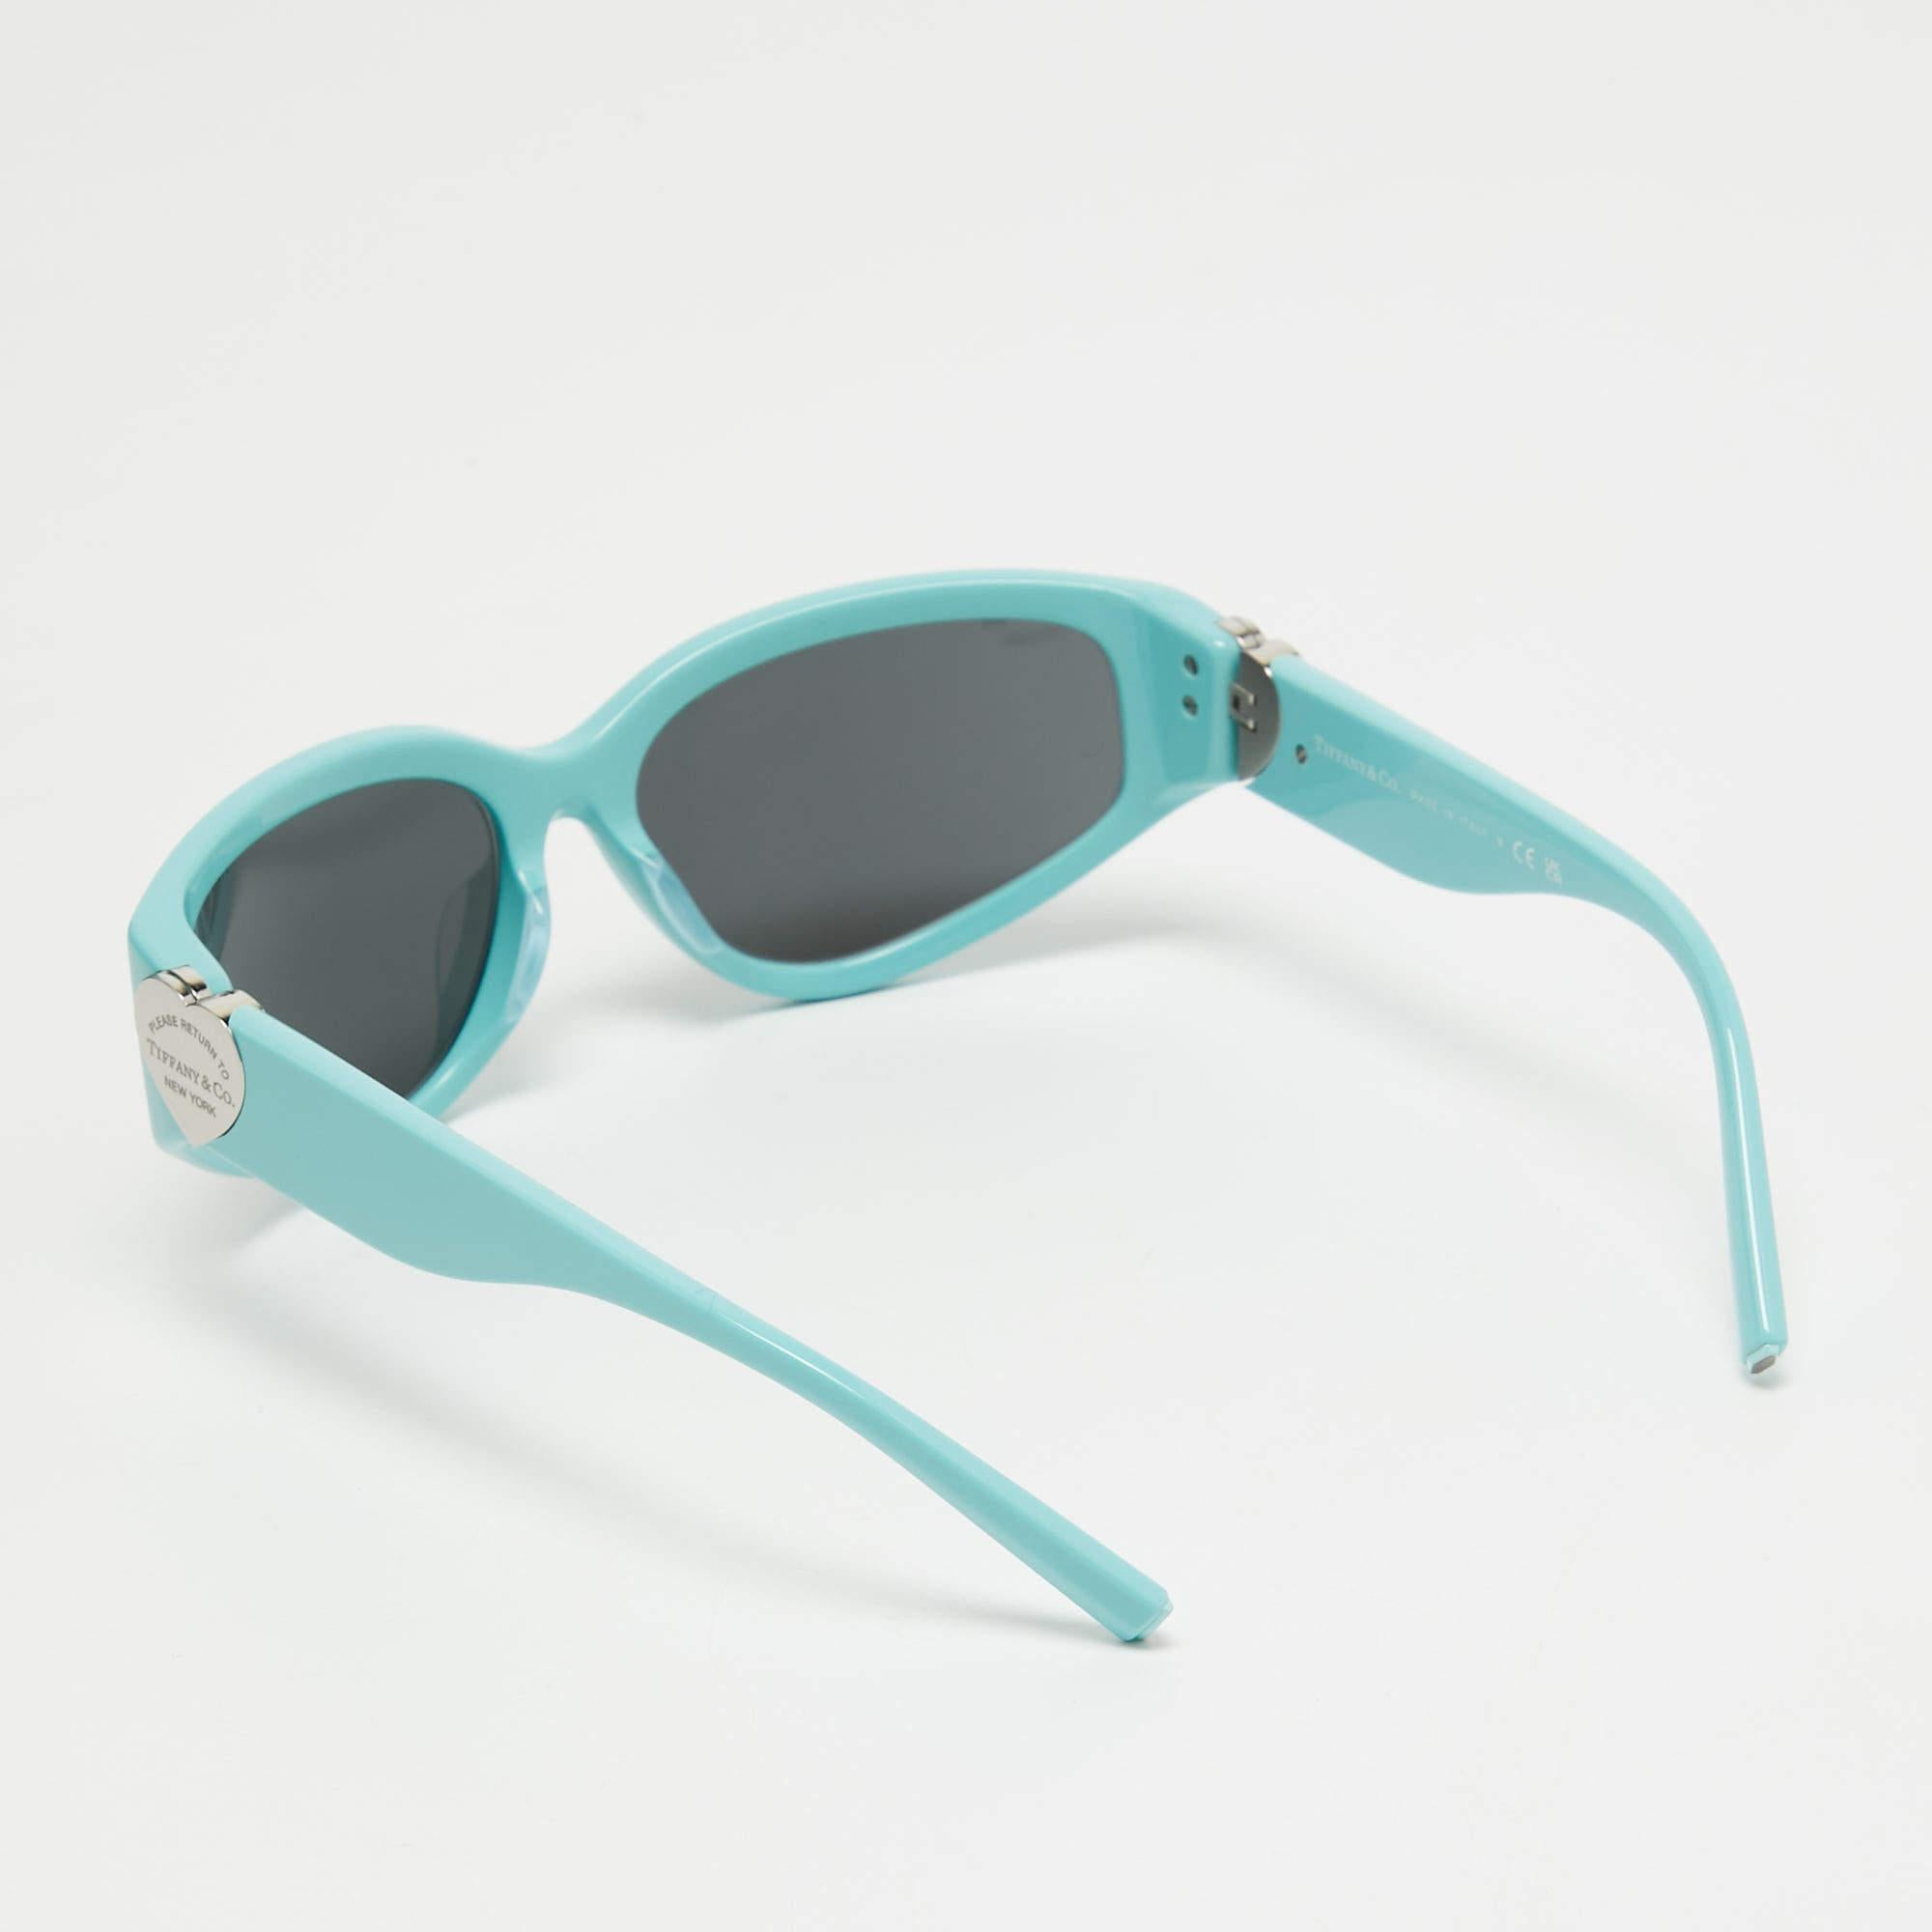 Eine auffällige Sonnenbrille von Tiffany & Co. ist mit Sicherheit ein wertvoller Kauf. Mit ihrem trendigen Rahmen und den augenschonenden Gläsern ist die Sonnenbrille ideal für den ganzen Tag.

